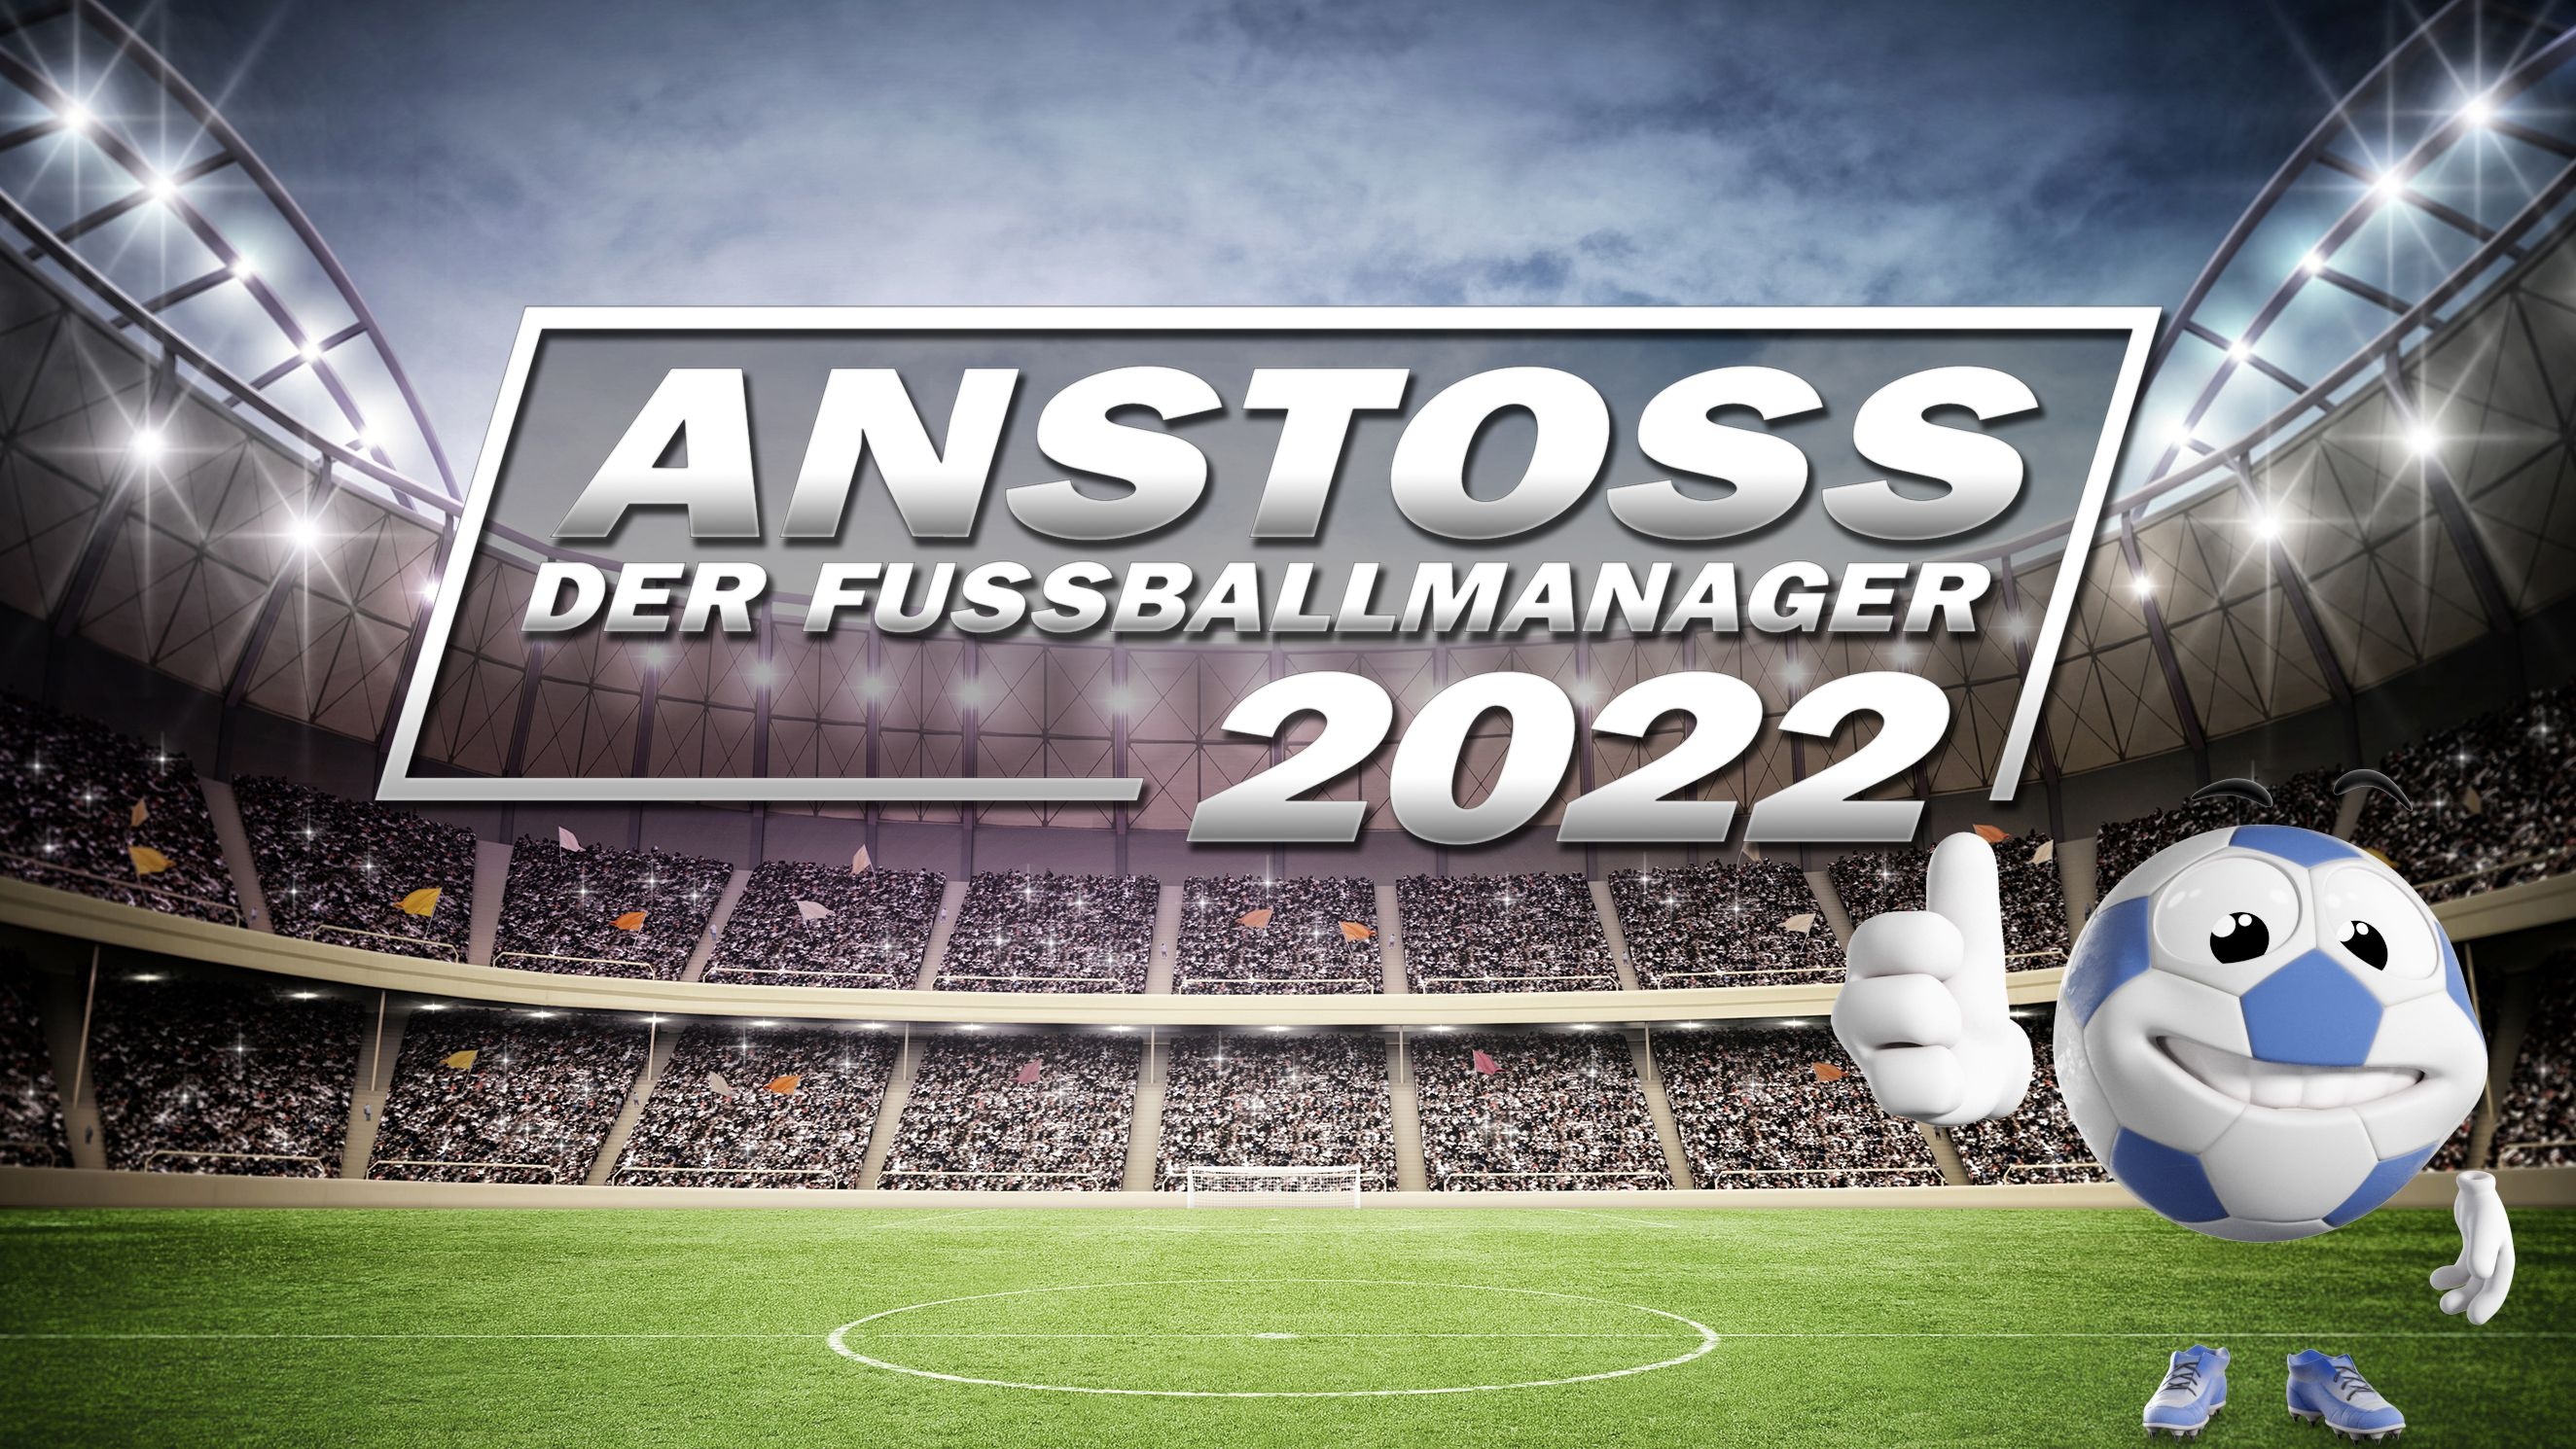 Anstoss 2022 lebt: Neue Infos und Bilder zum Fußballmanager